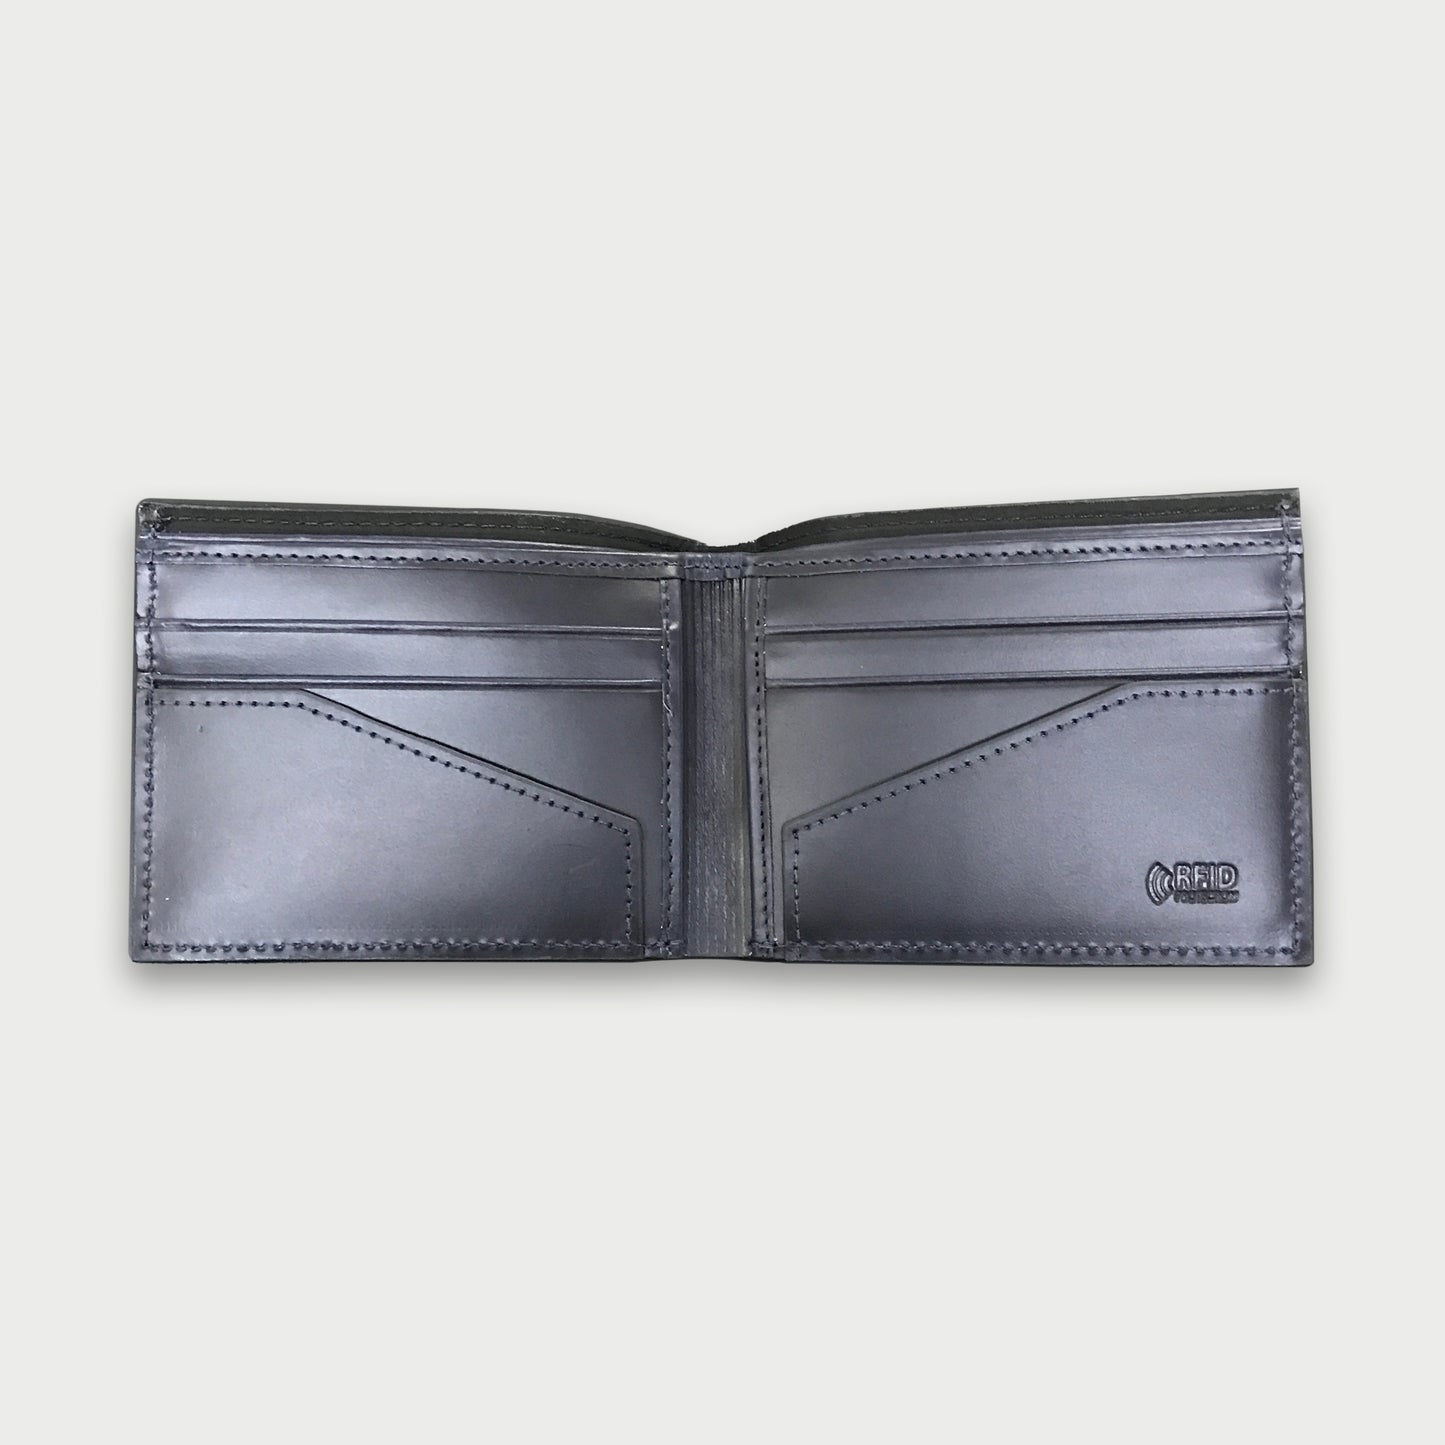 Billetera de cuero napa + lona color azul oscuro